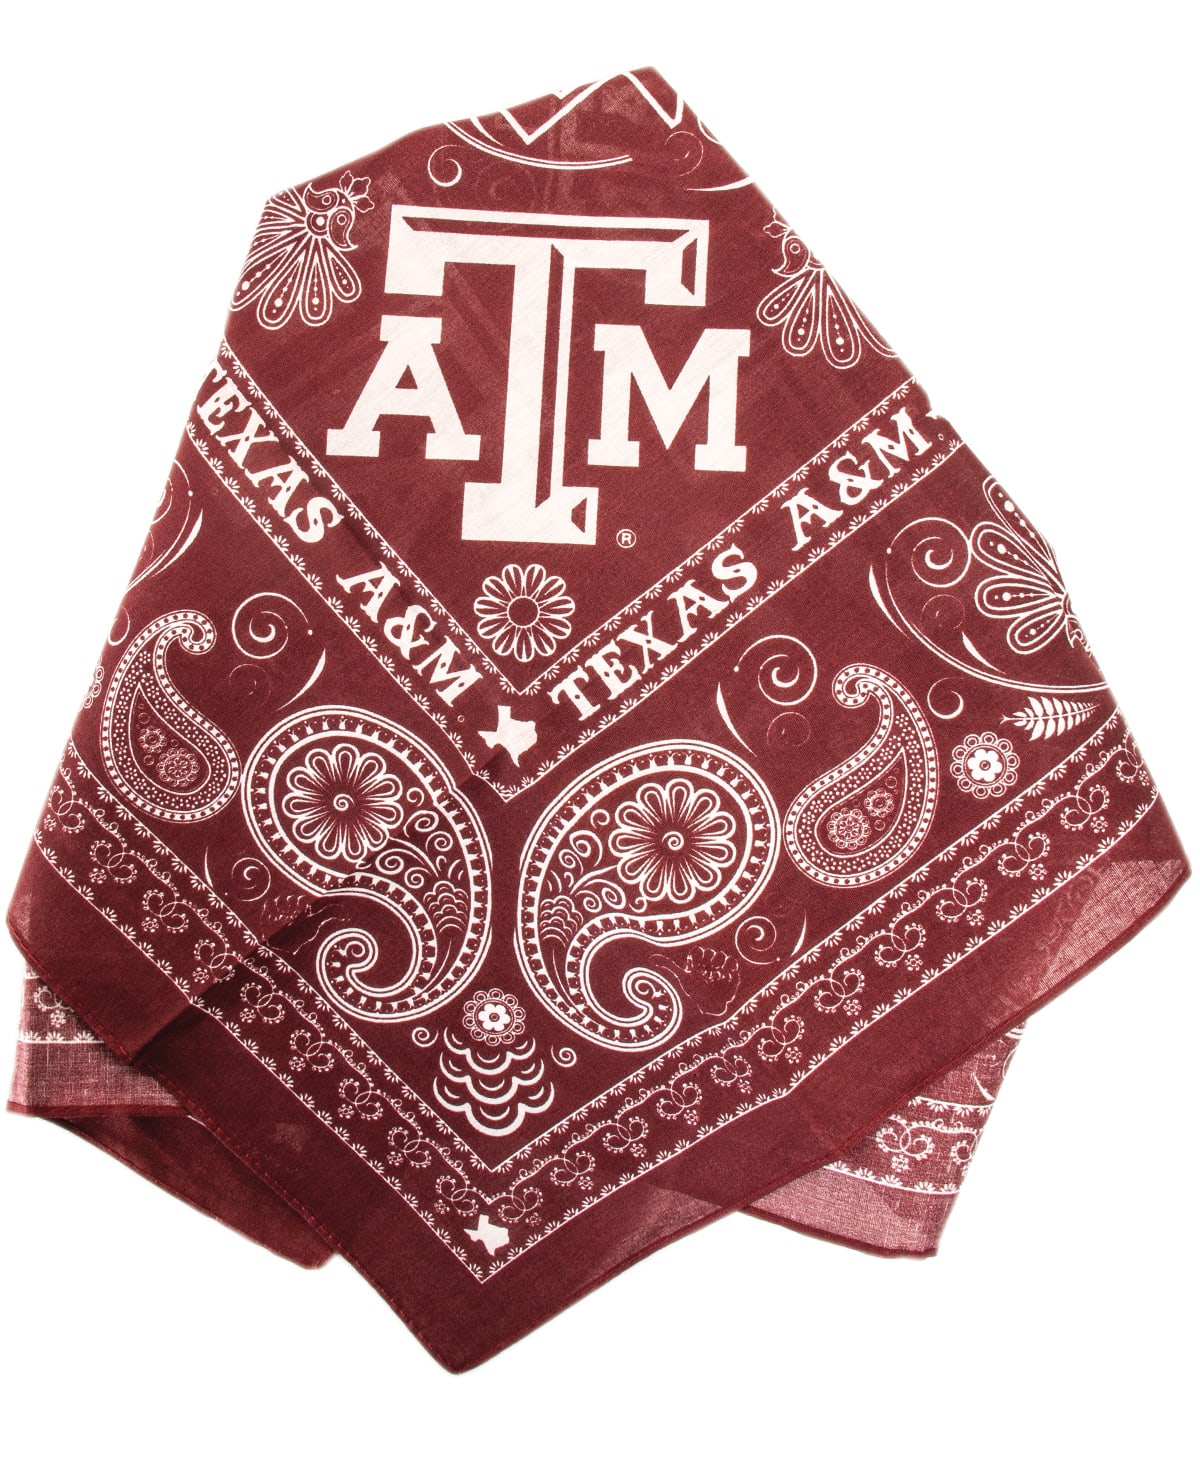 Texas A&M Aggie All-Purpose Bandana